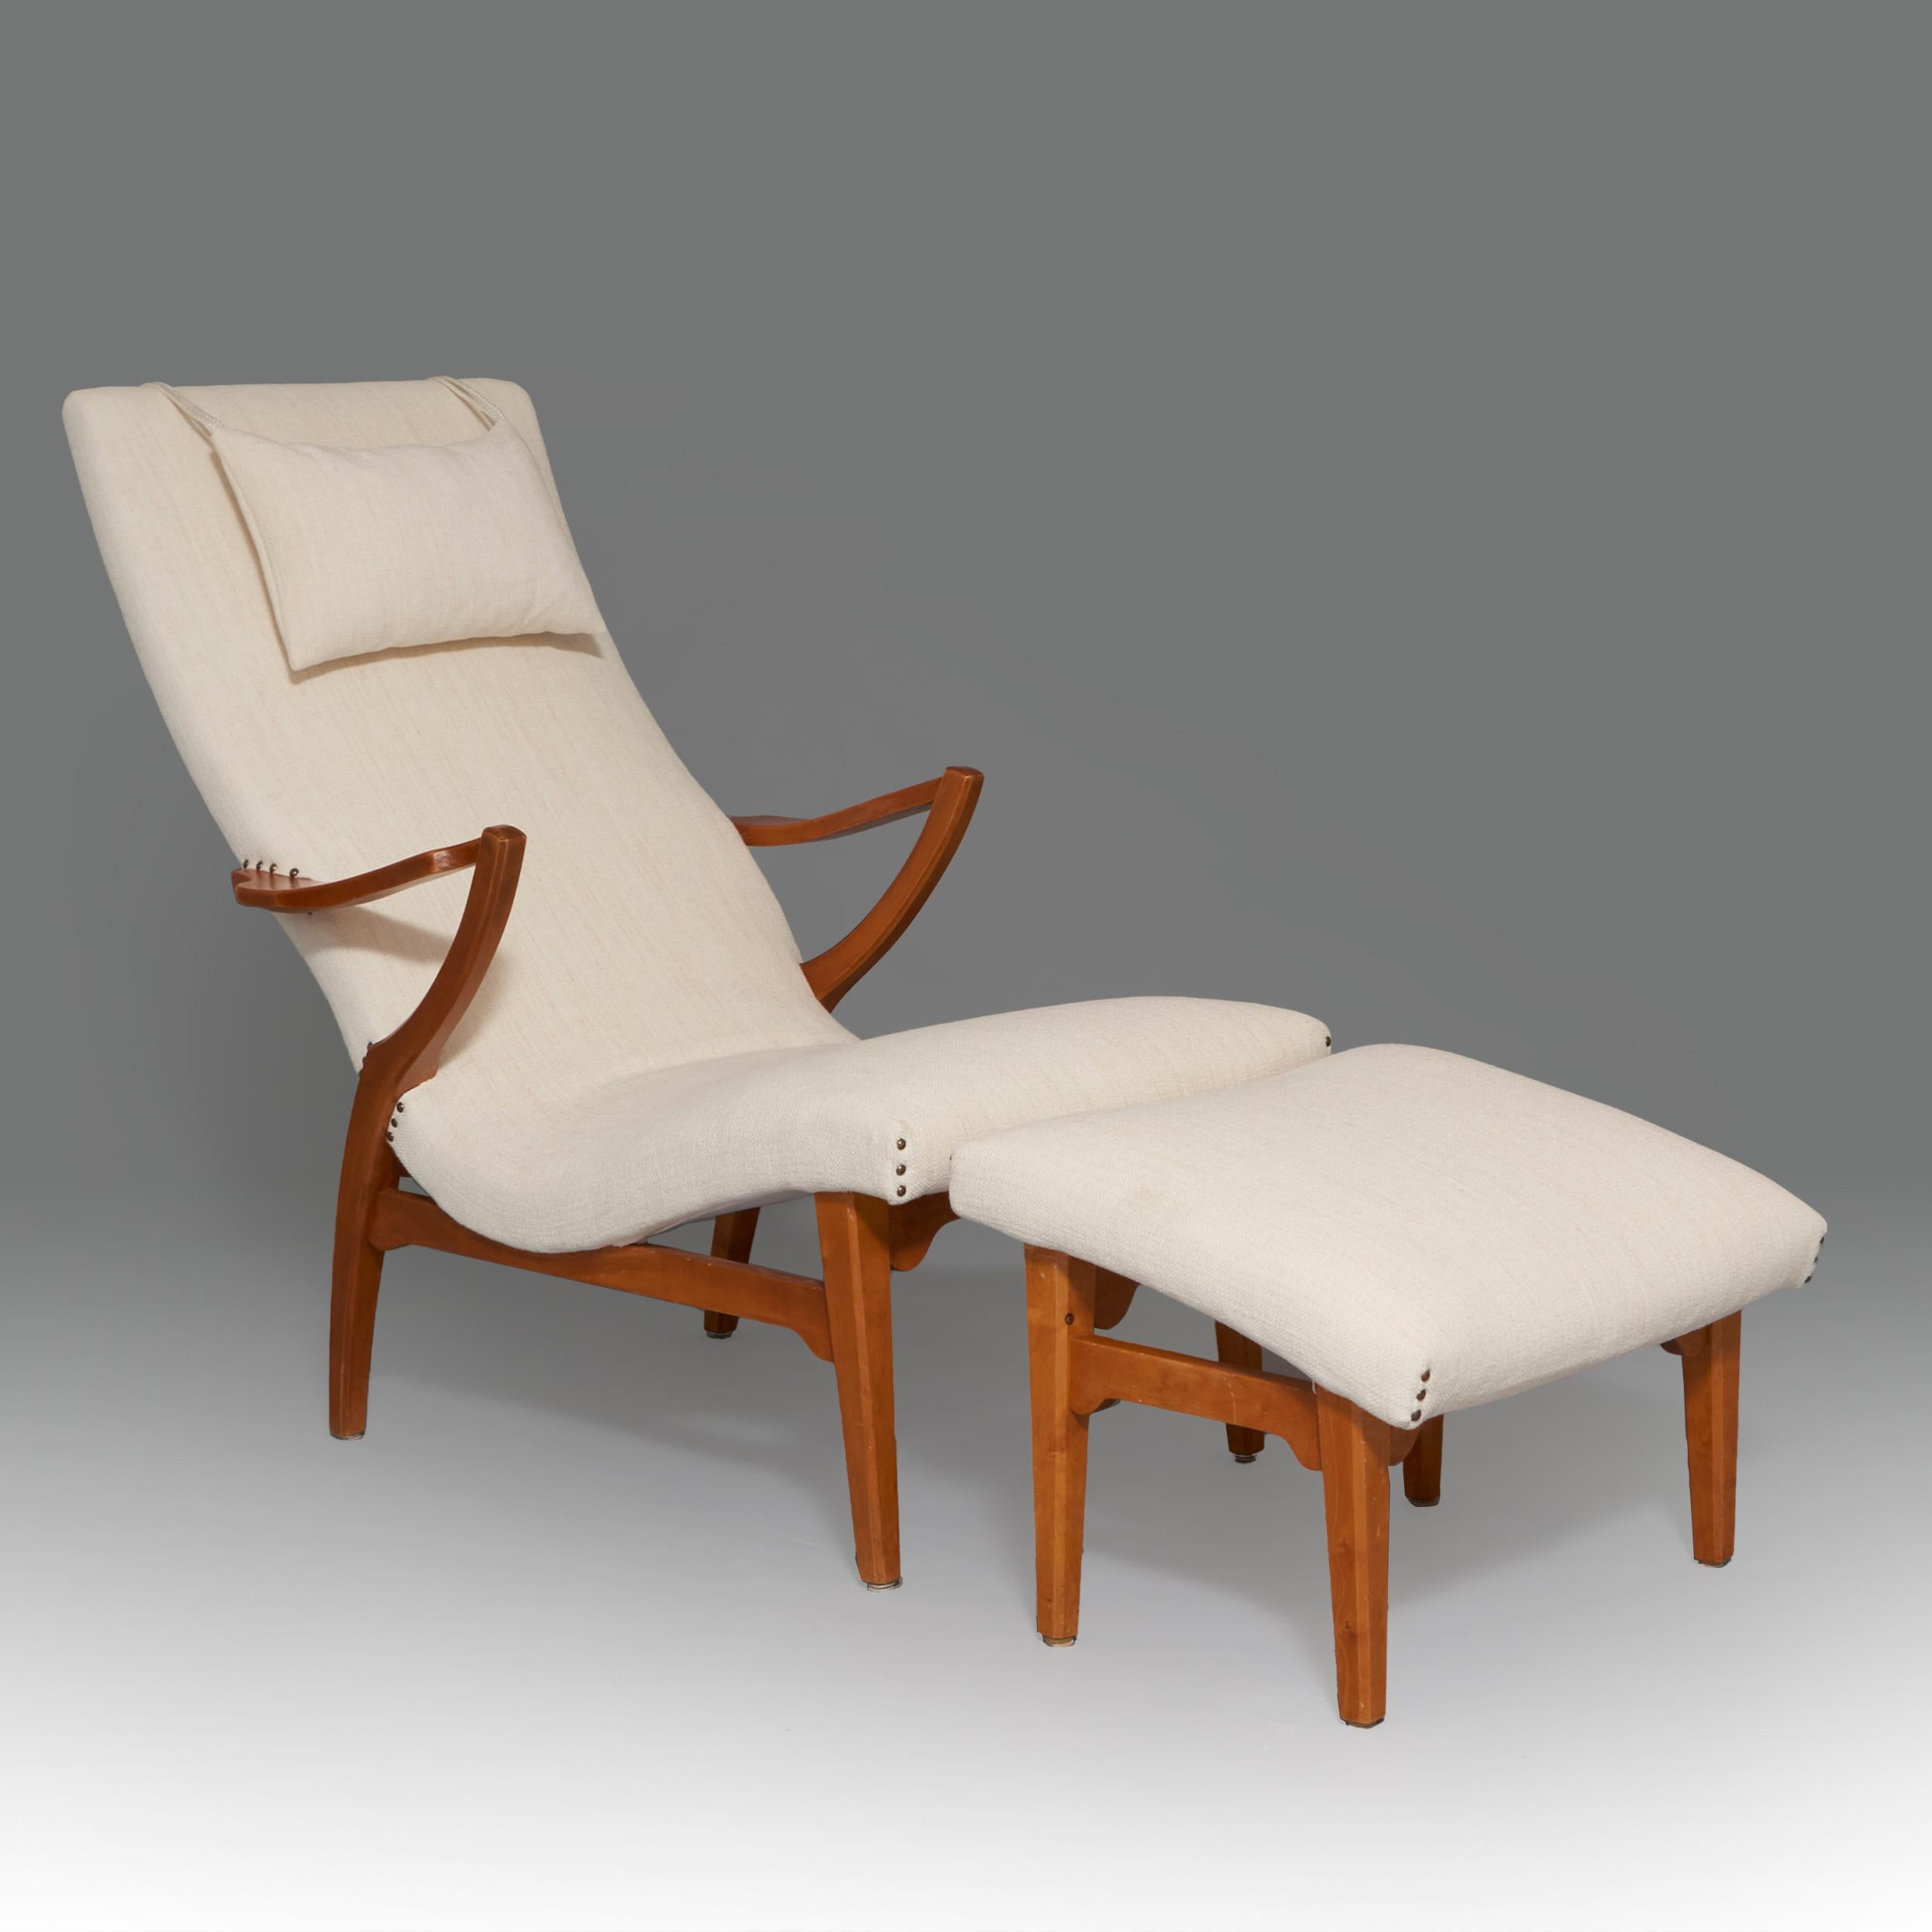 Sessel und Ottomane, entworfen von Axel Larsson, aus Polsterung und Hartholz. Schweden, 1940er Jahre

Axel Larsson war ein schwedischer Innenarchitekt und Möbeldesigner, der den größten Teil seiner Karriere für die Svenska Möbelfabrikerna,